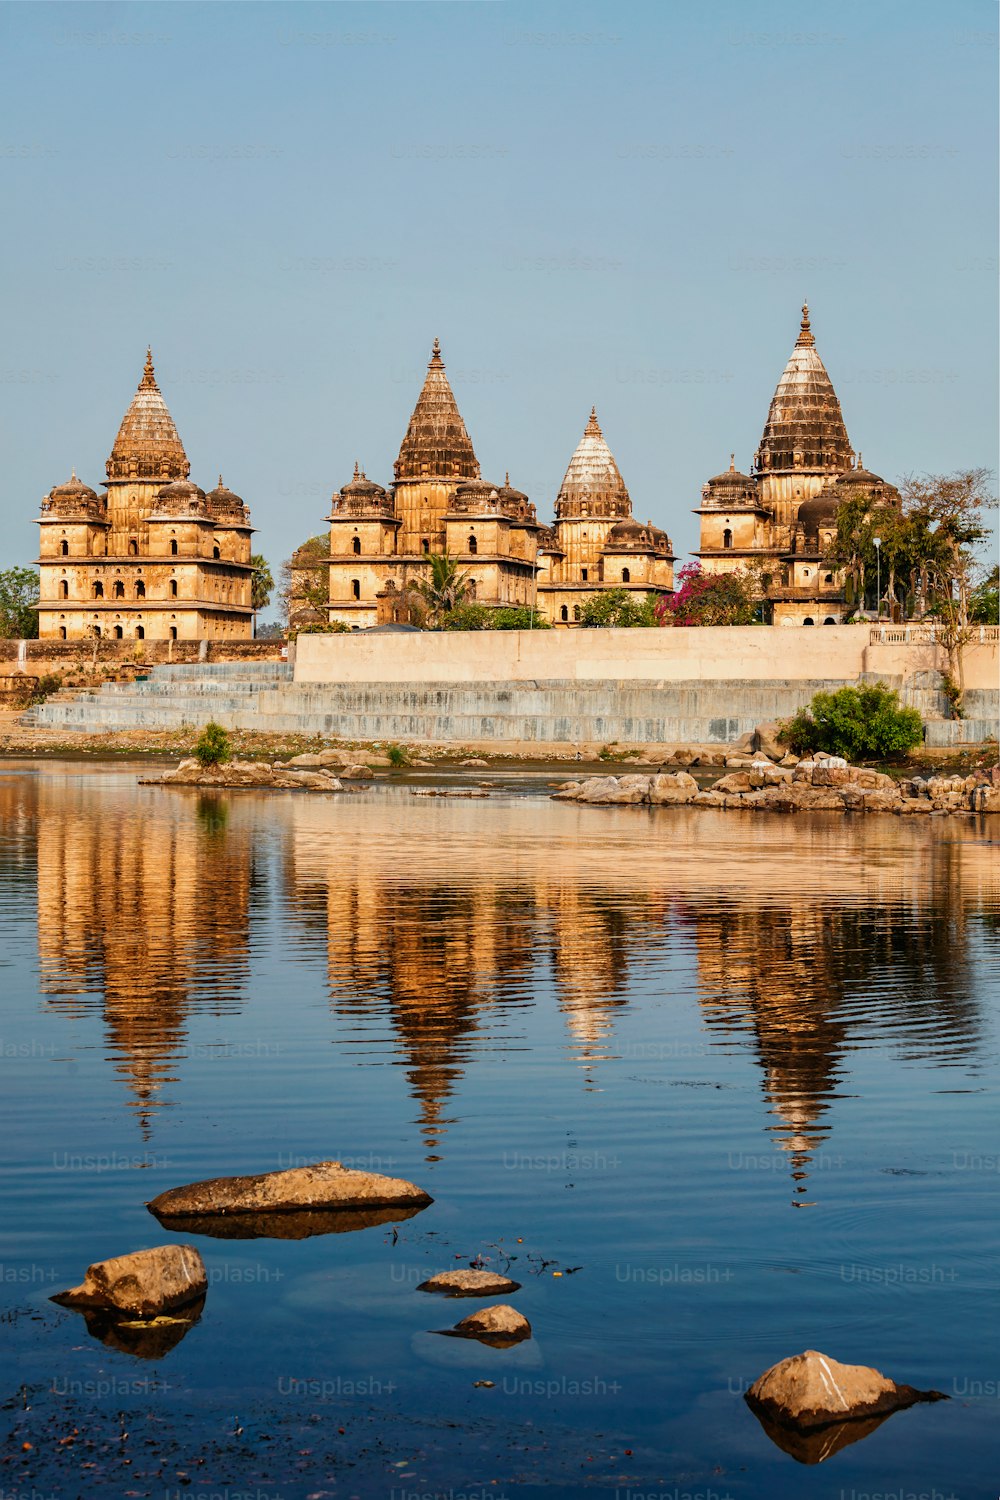 Marco indiano turístico - vista dos cenotáfios reais de Orchha sobre o rio Betwa. Orchha, Madhya Pradesh, Índia